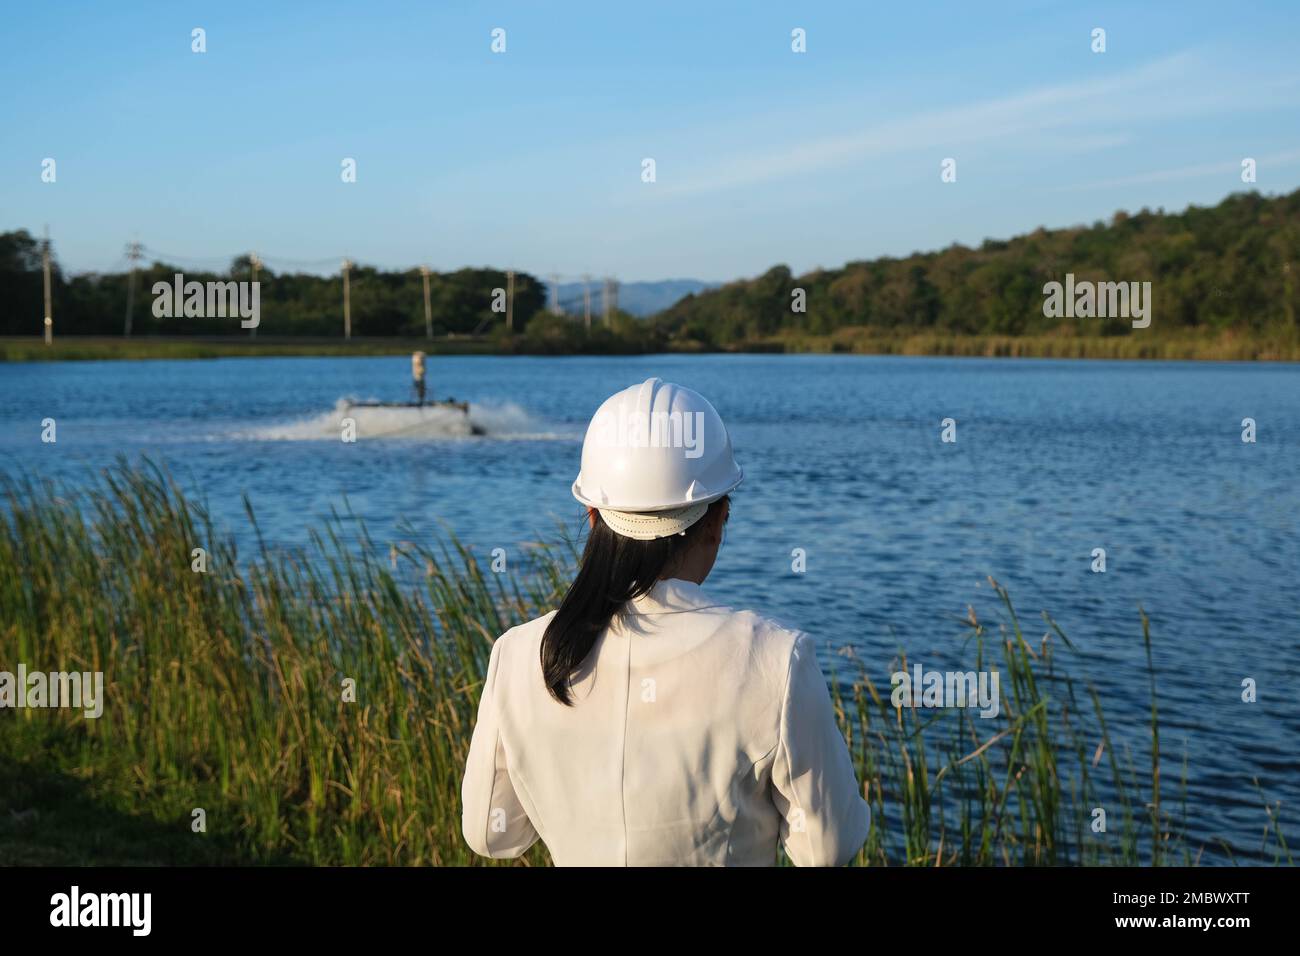 Un ingénieur de l'environnement portant un casque blanc utilise un téléphone portable pour faire fonctionner un aérateur à turbine à oxygène dans un étang. Concept de l'eau et de l'écologie. Banque D'Images